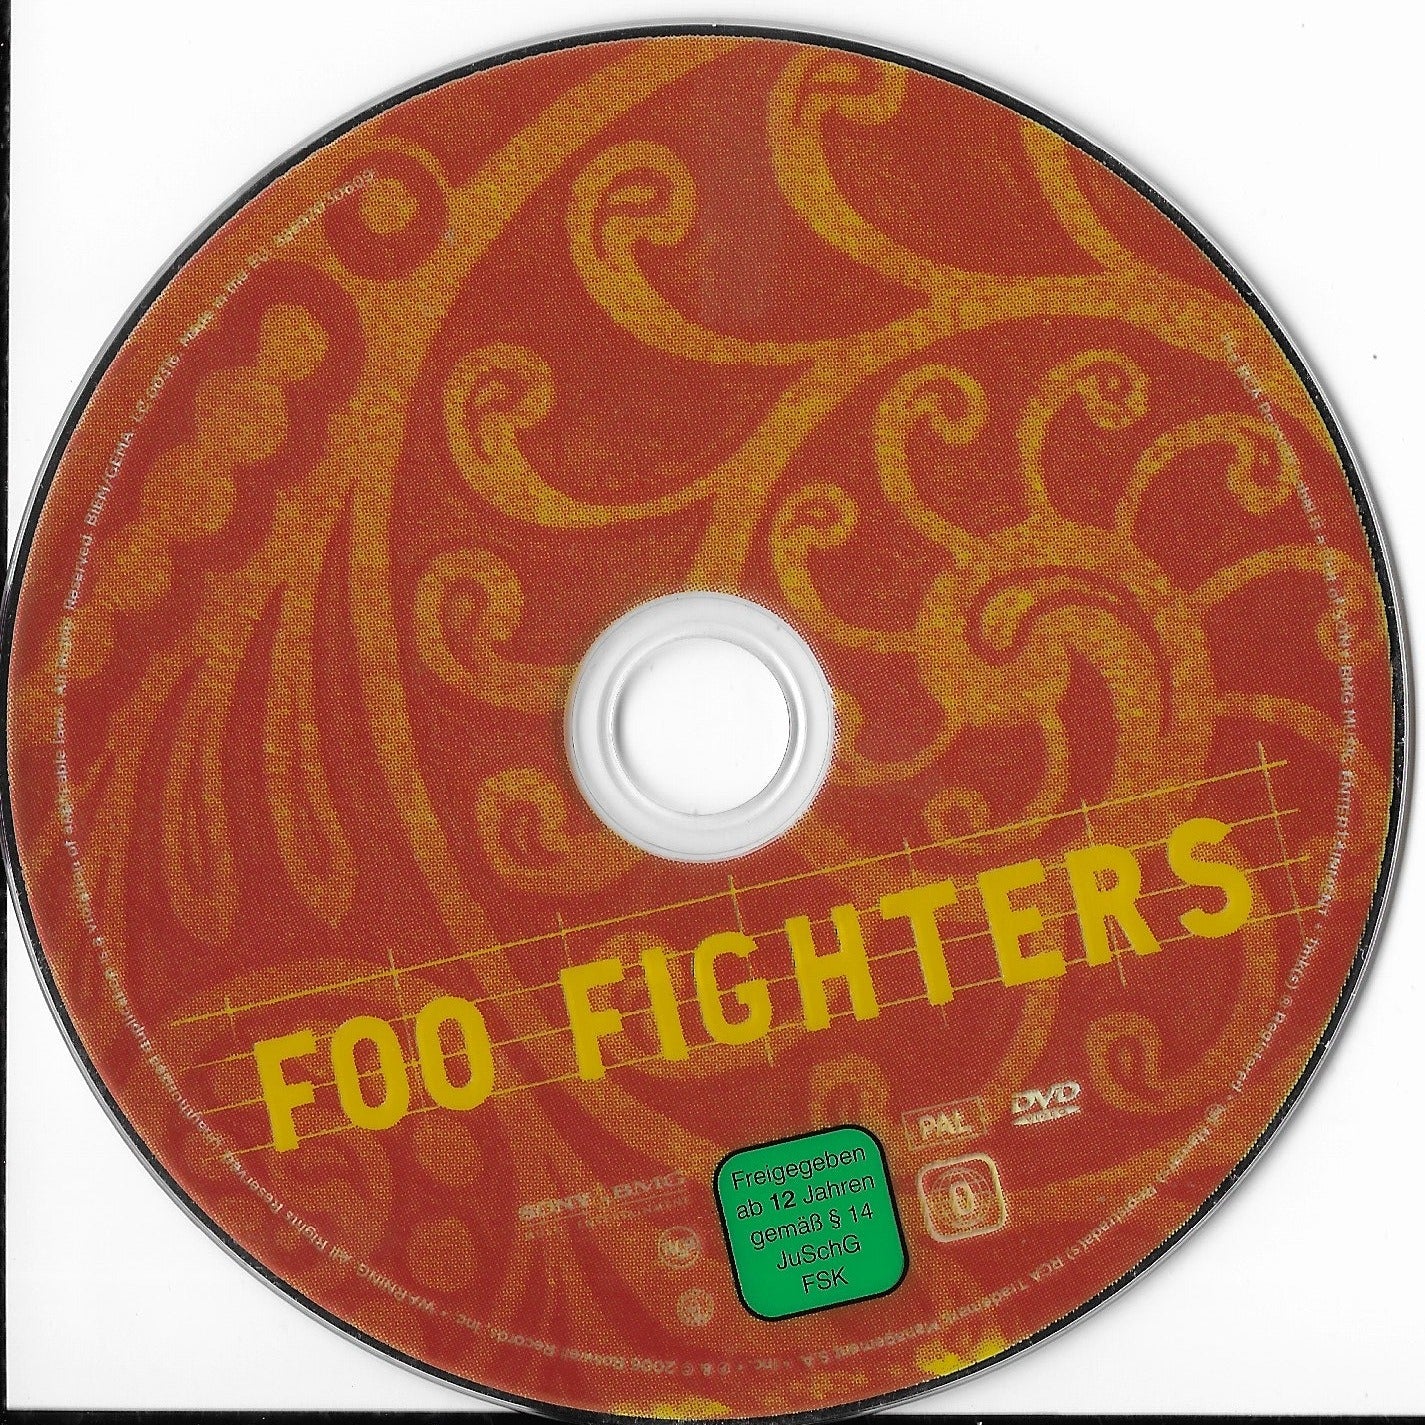 FOO FIGHTERS - Skin And Bones